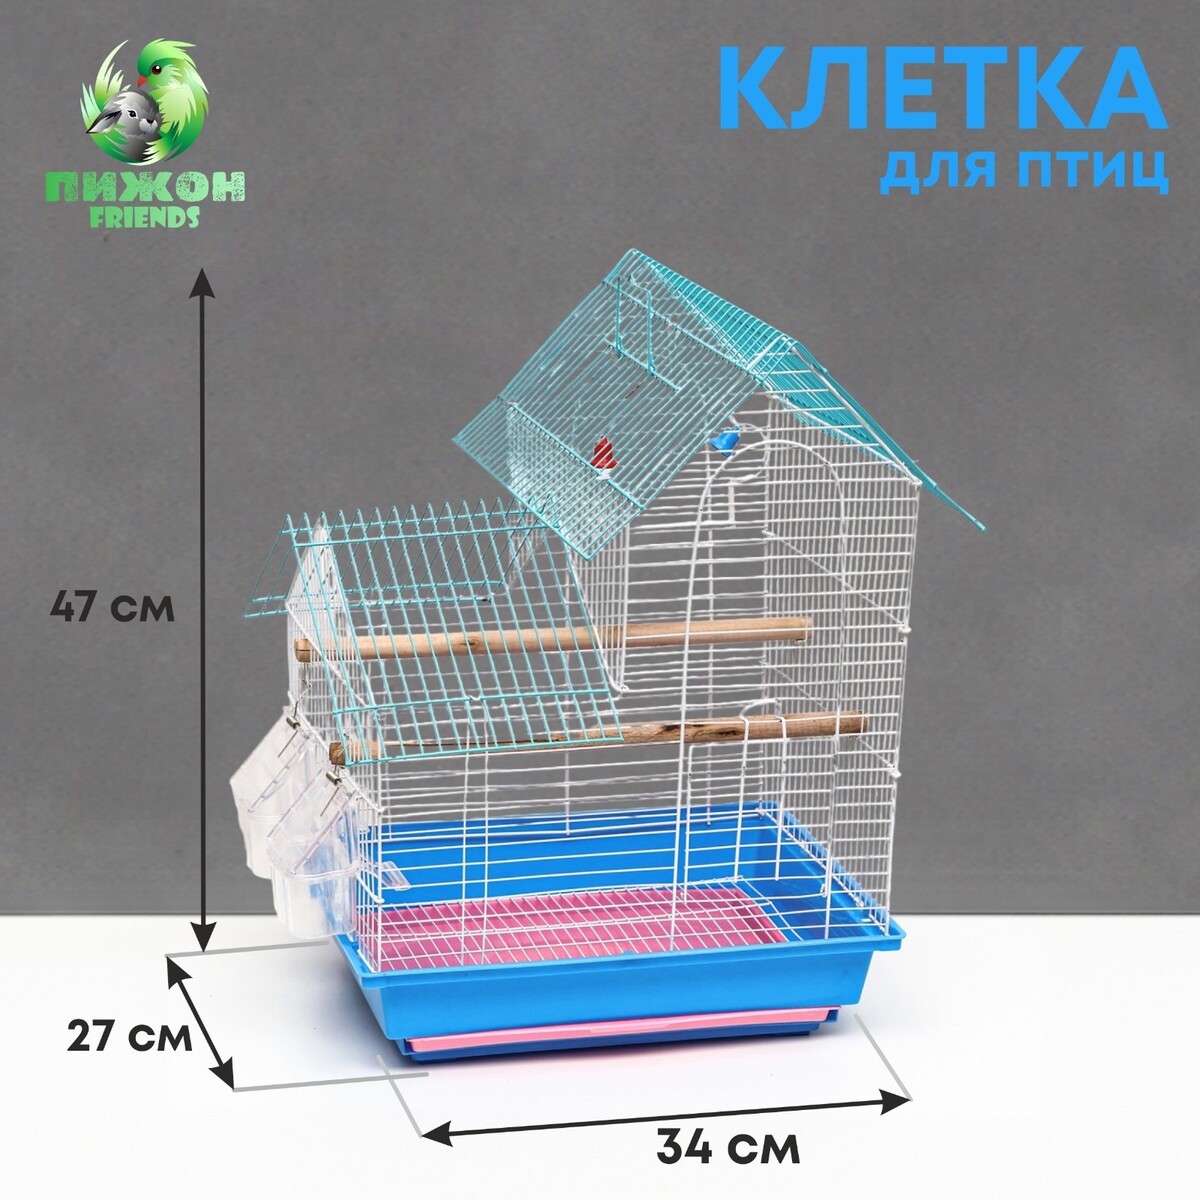 Клетка для птиц укомплектованная bd-2/5h, 34 х 27 х 47 см, синяя Пижон